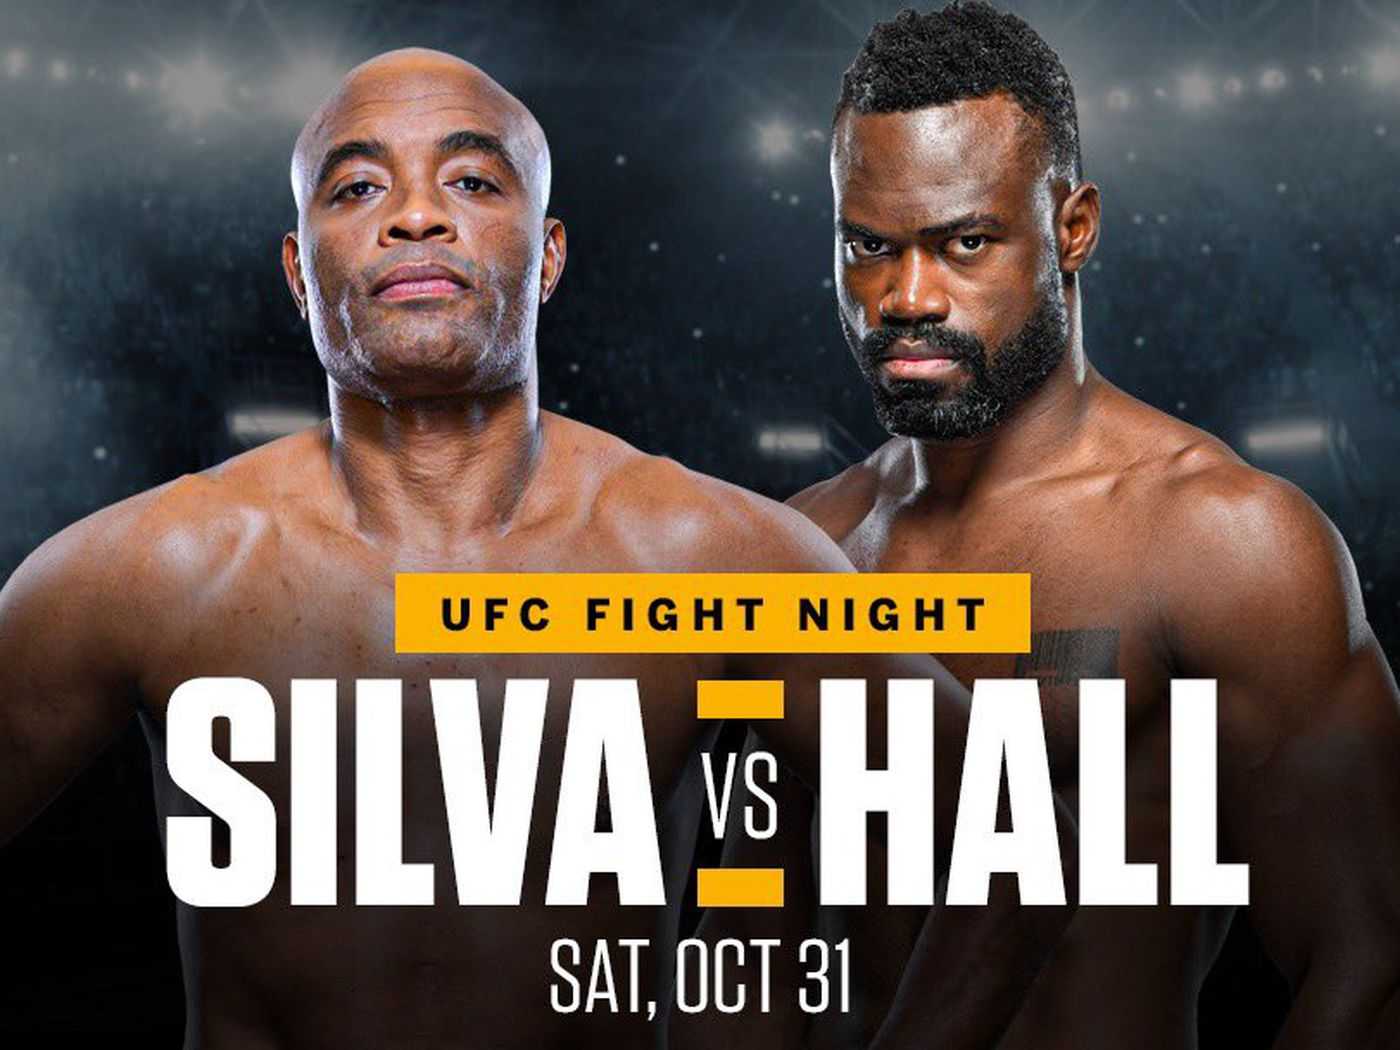 UFC Fight Night: Hall Vs Silva: Carte préliminaire - Prédictions et analyse